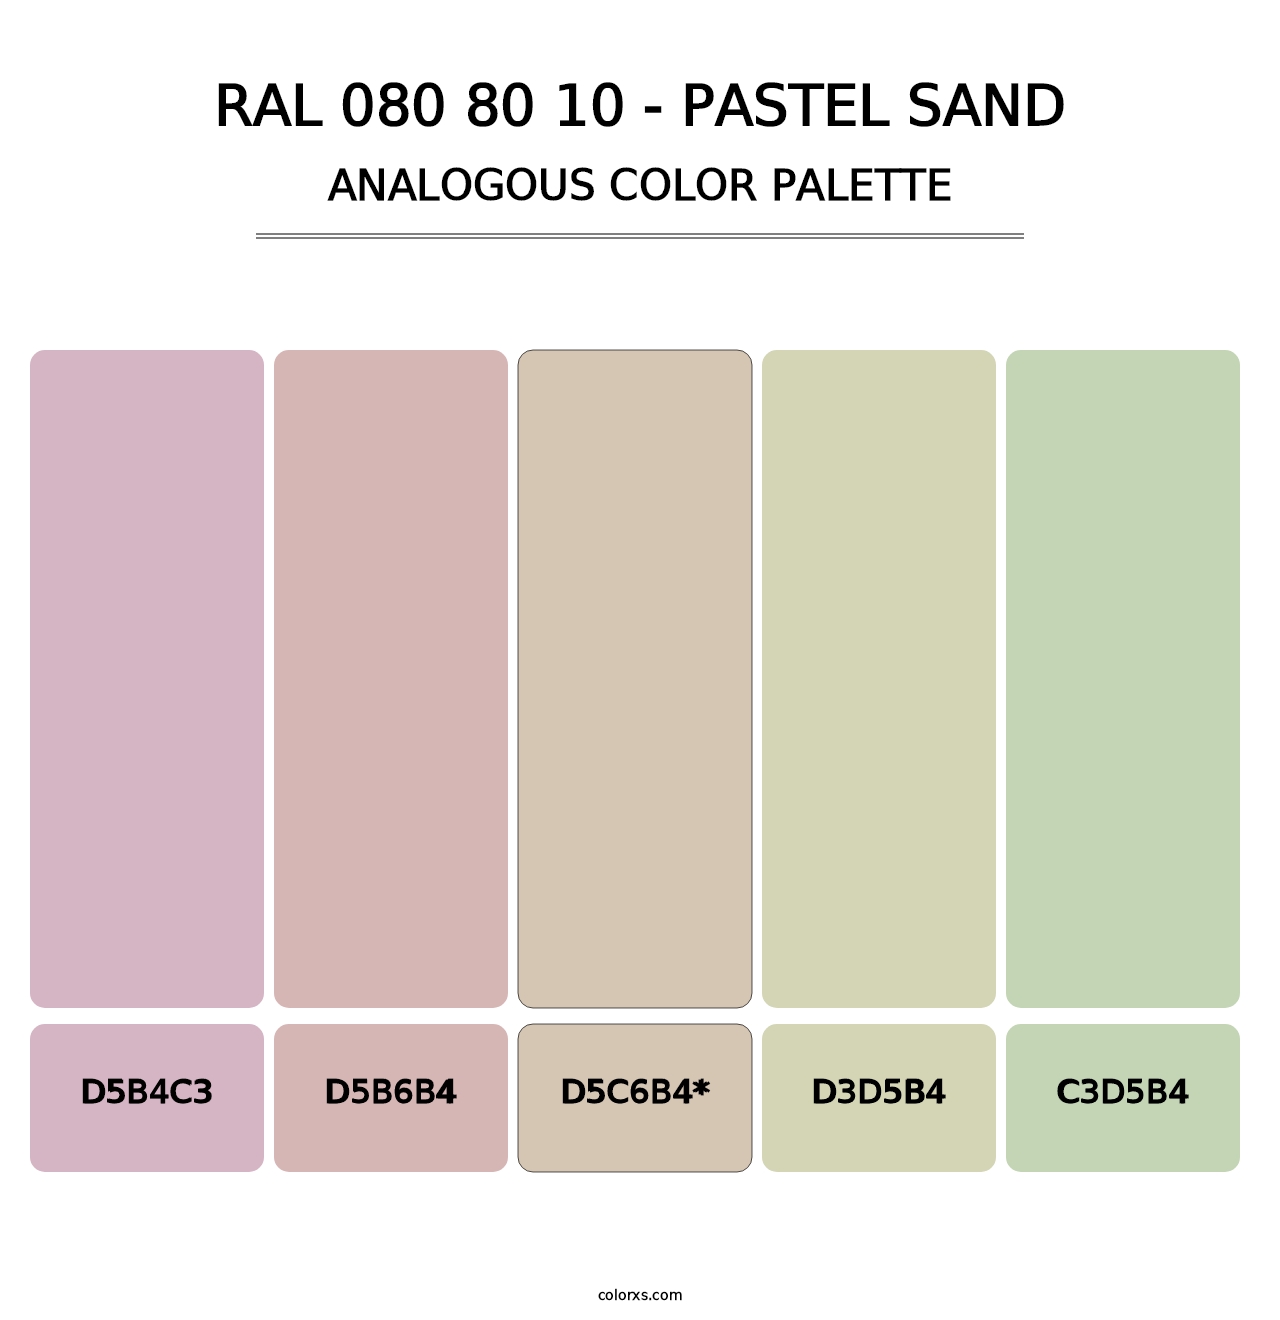 RAL 080 80 10 - Pastel Sand - Analogous Color Palette